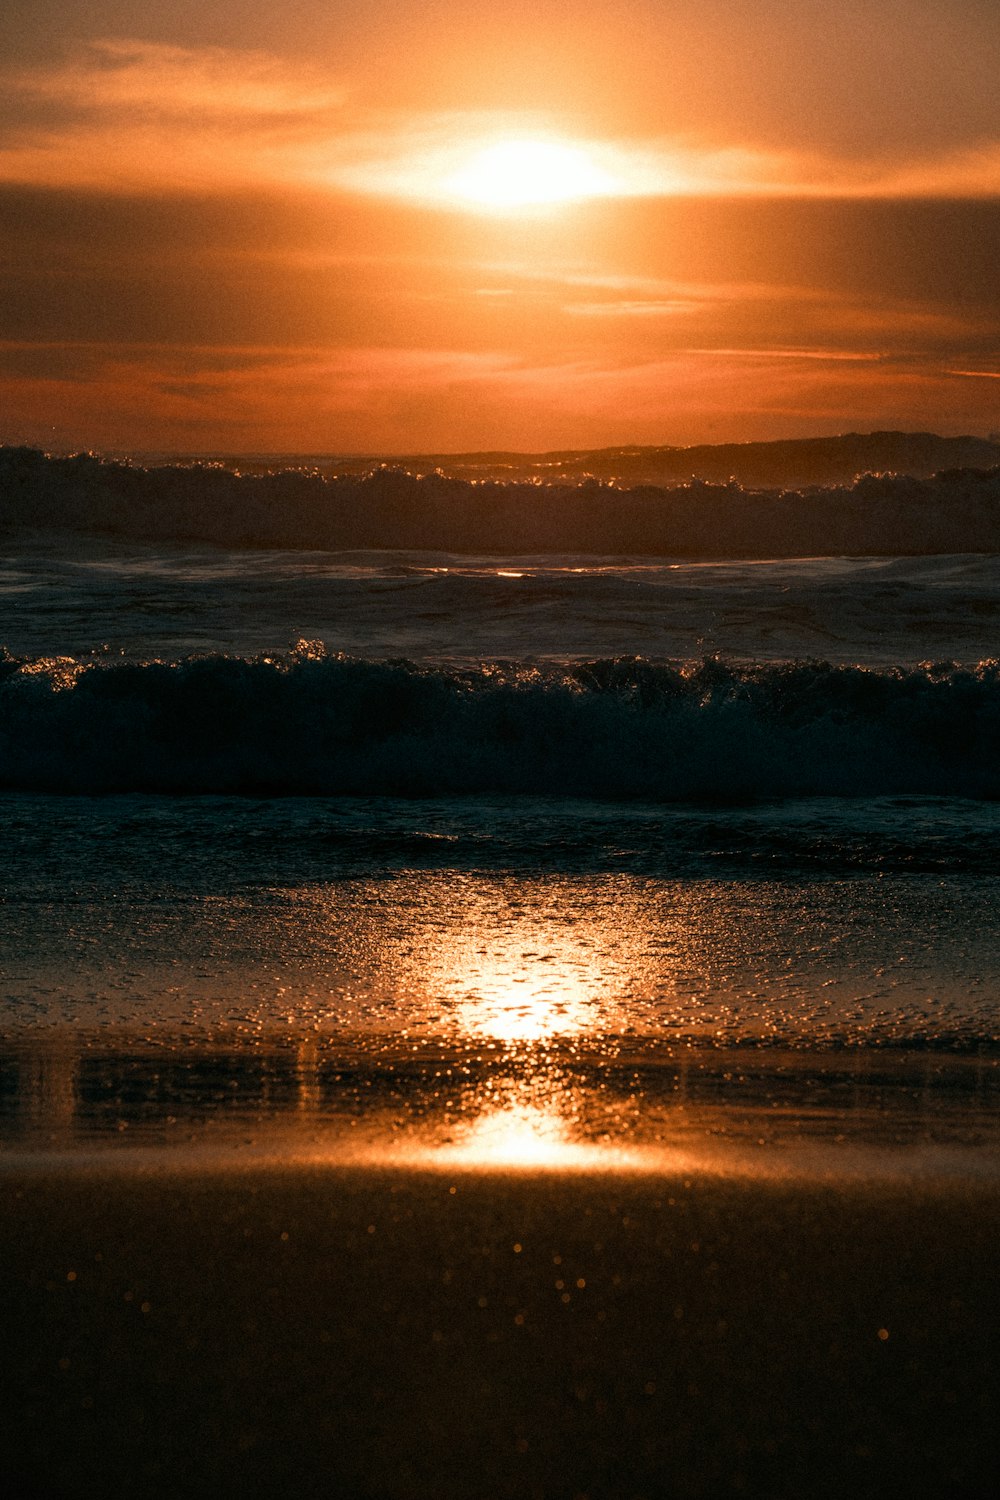 Le soleil se couche sur l’océan sur une plage